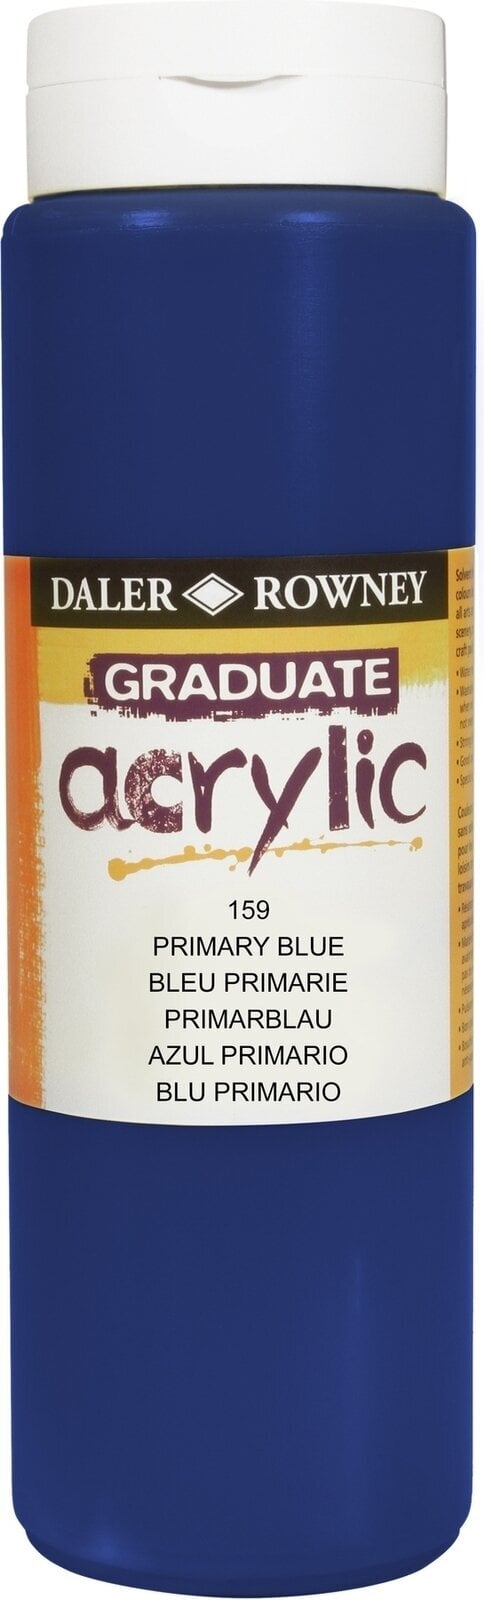 Akrilna boja Daler Rowney Graduate Akrilna boja Primary Blue 500 ml 1 kom